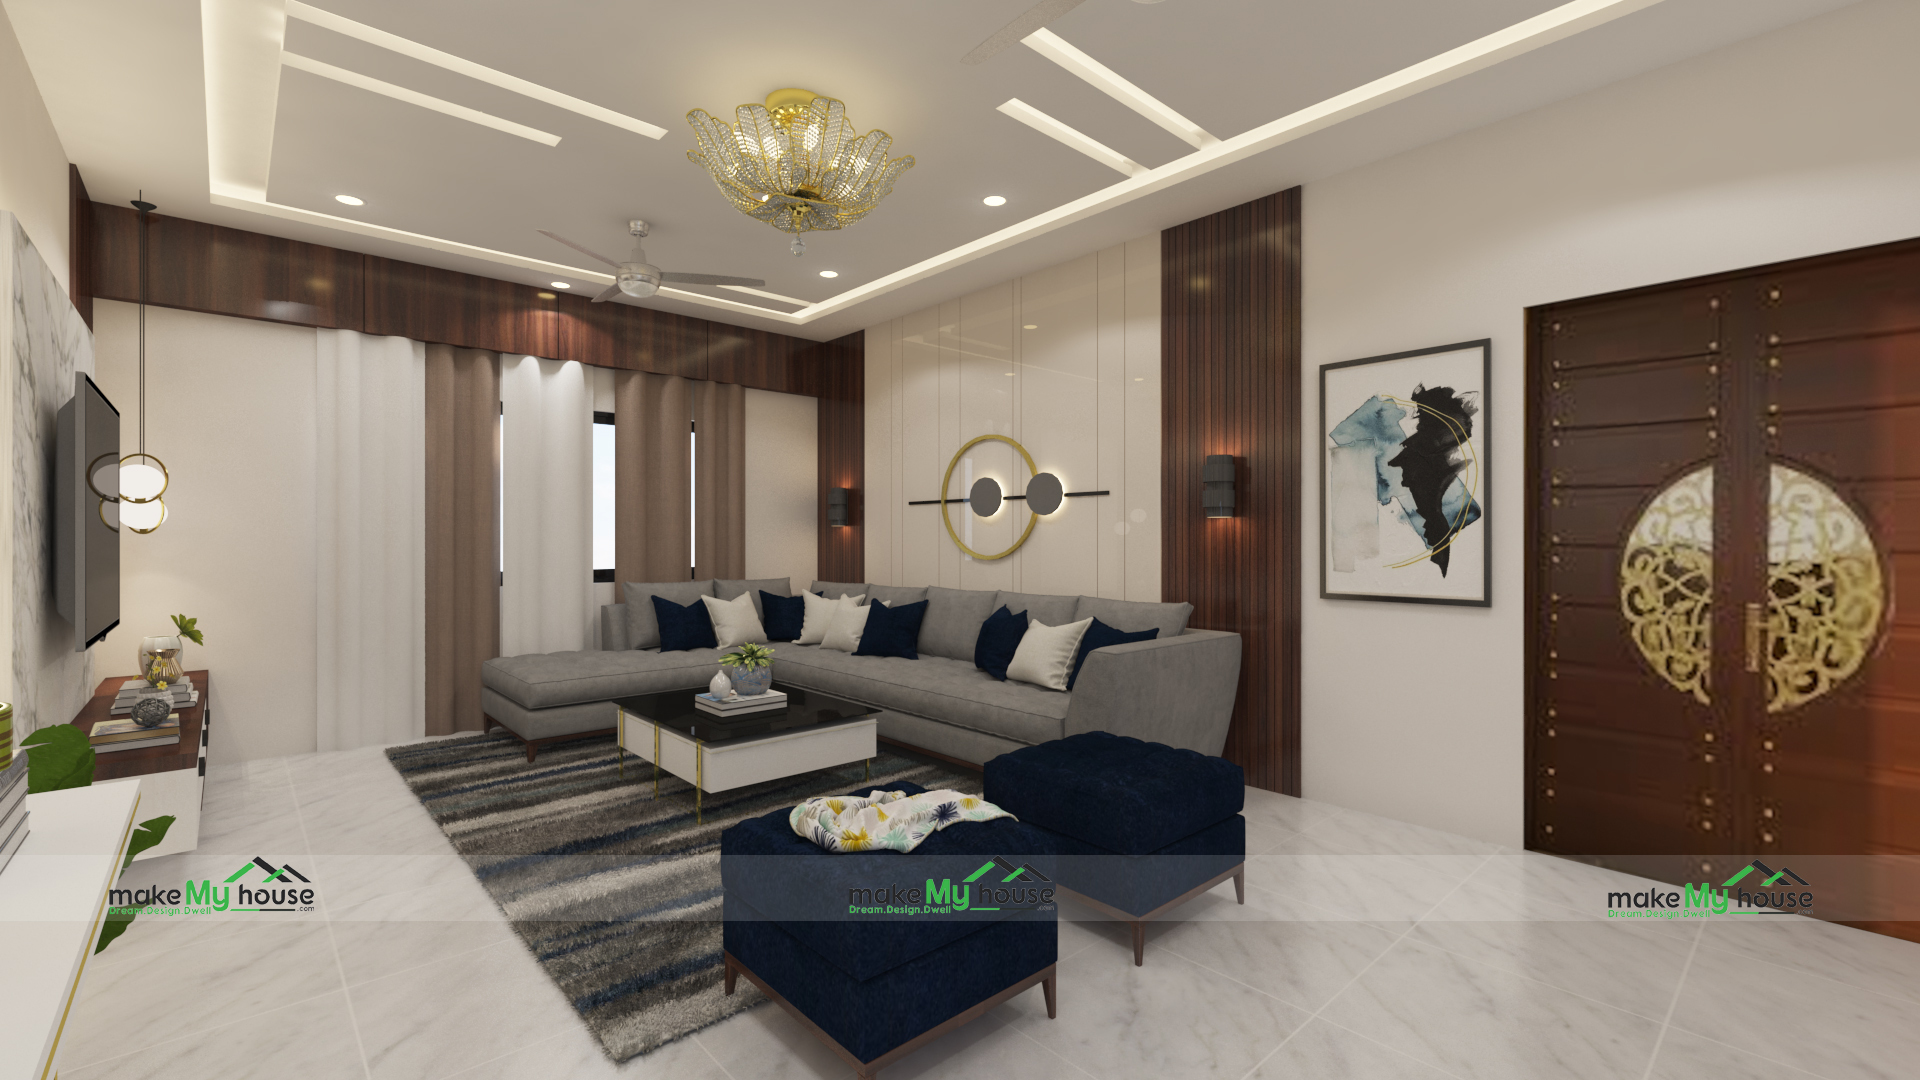 Living Room Design | Dream House Interior Design 